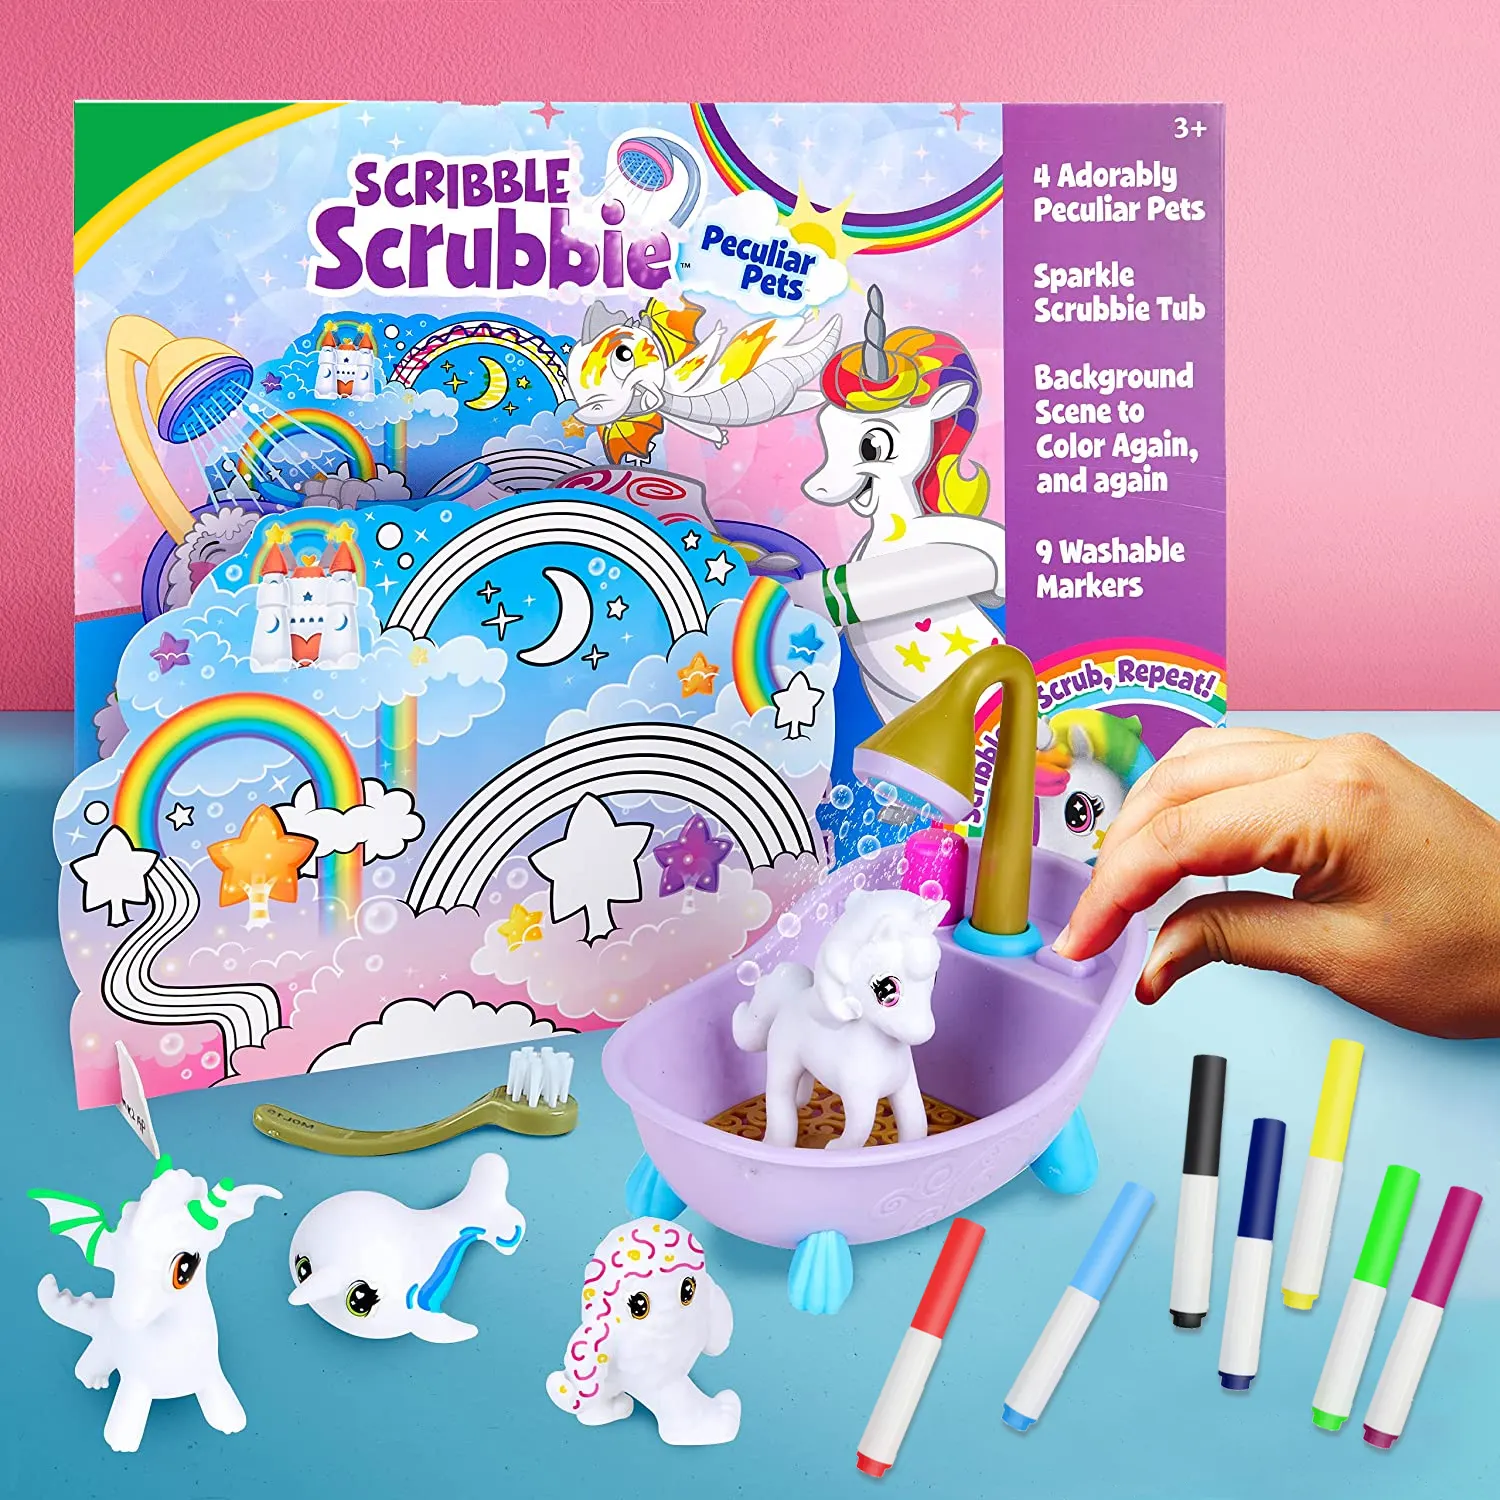 KHY Mädchen und Jungen Geschenke Besondere Haustiere Oster korb Stuffers Wasch bare Marker für Kinder Spielzeug farbe Graffiti Draw Art Pen Set